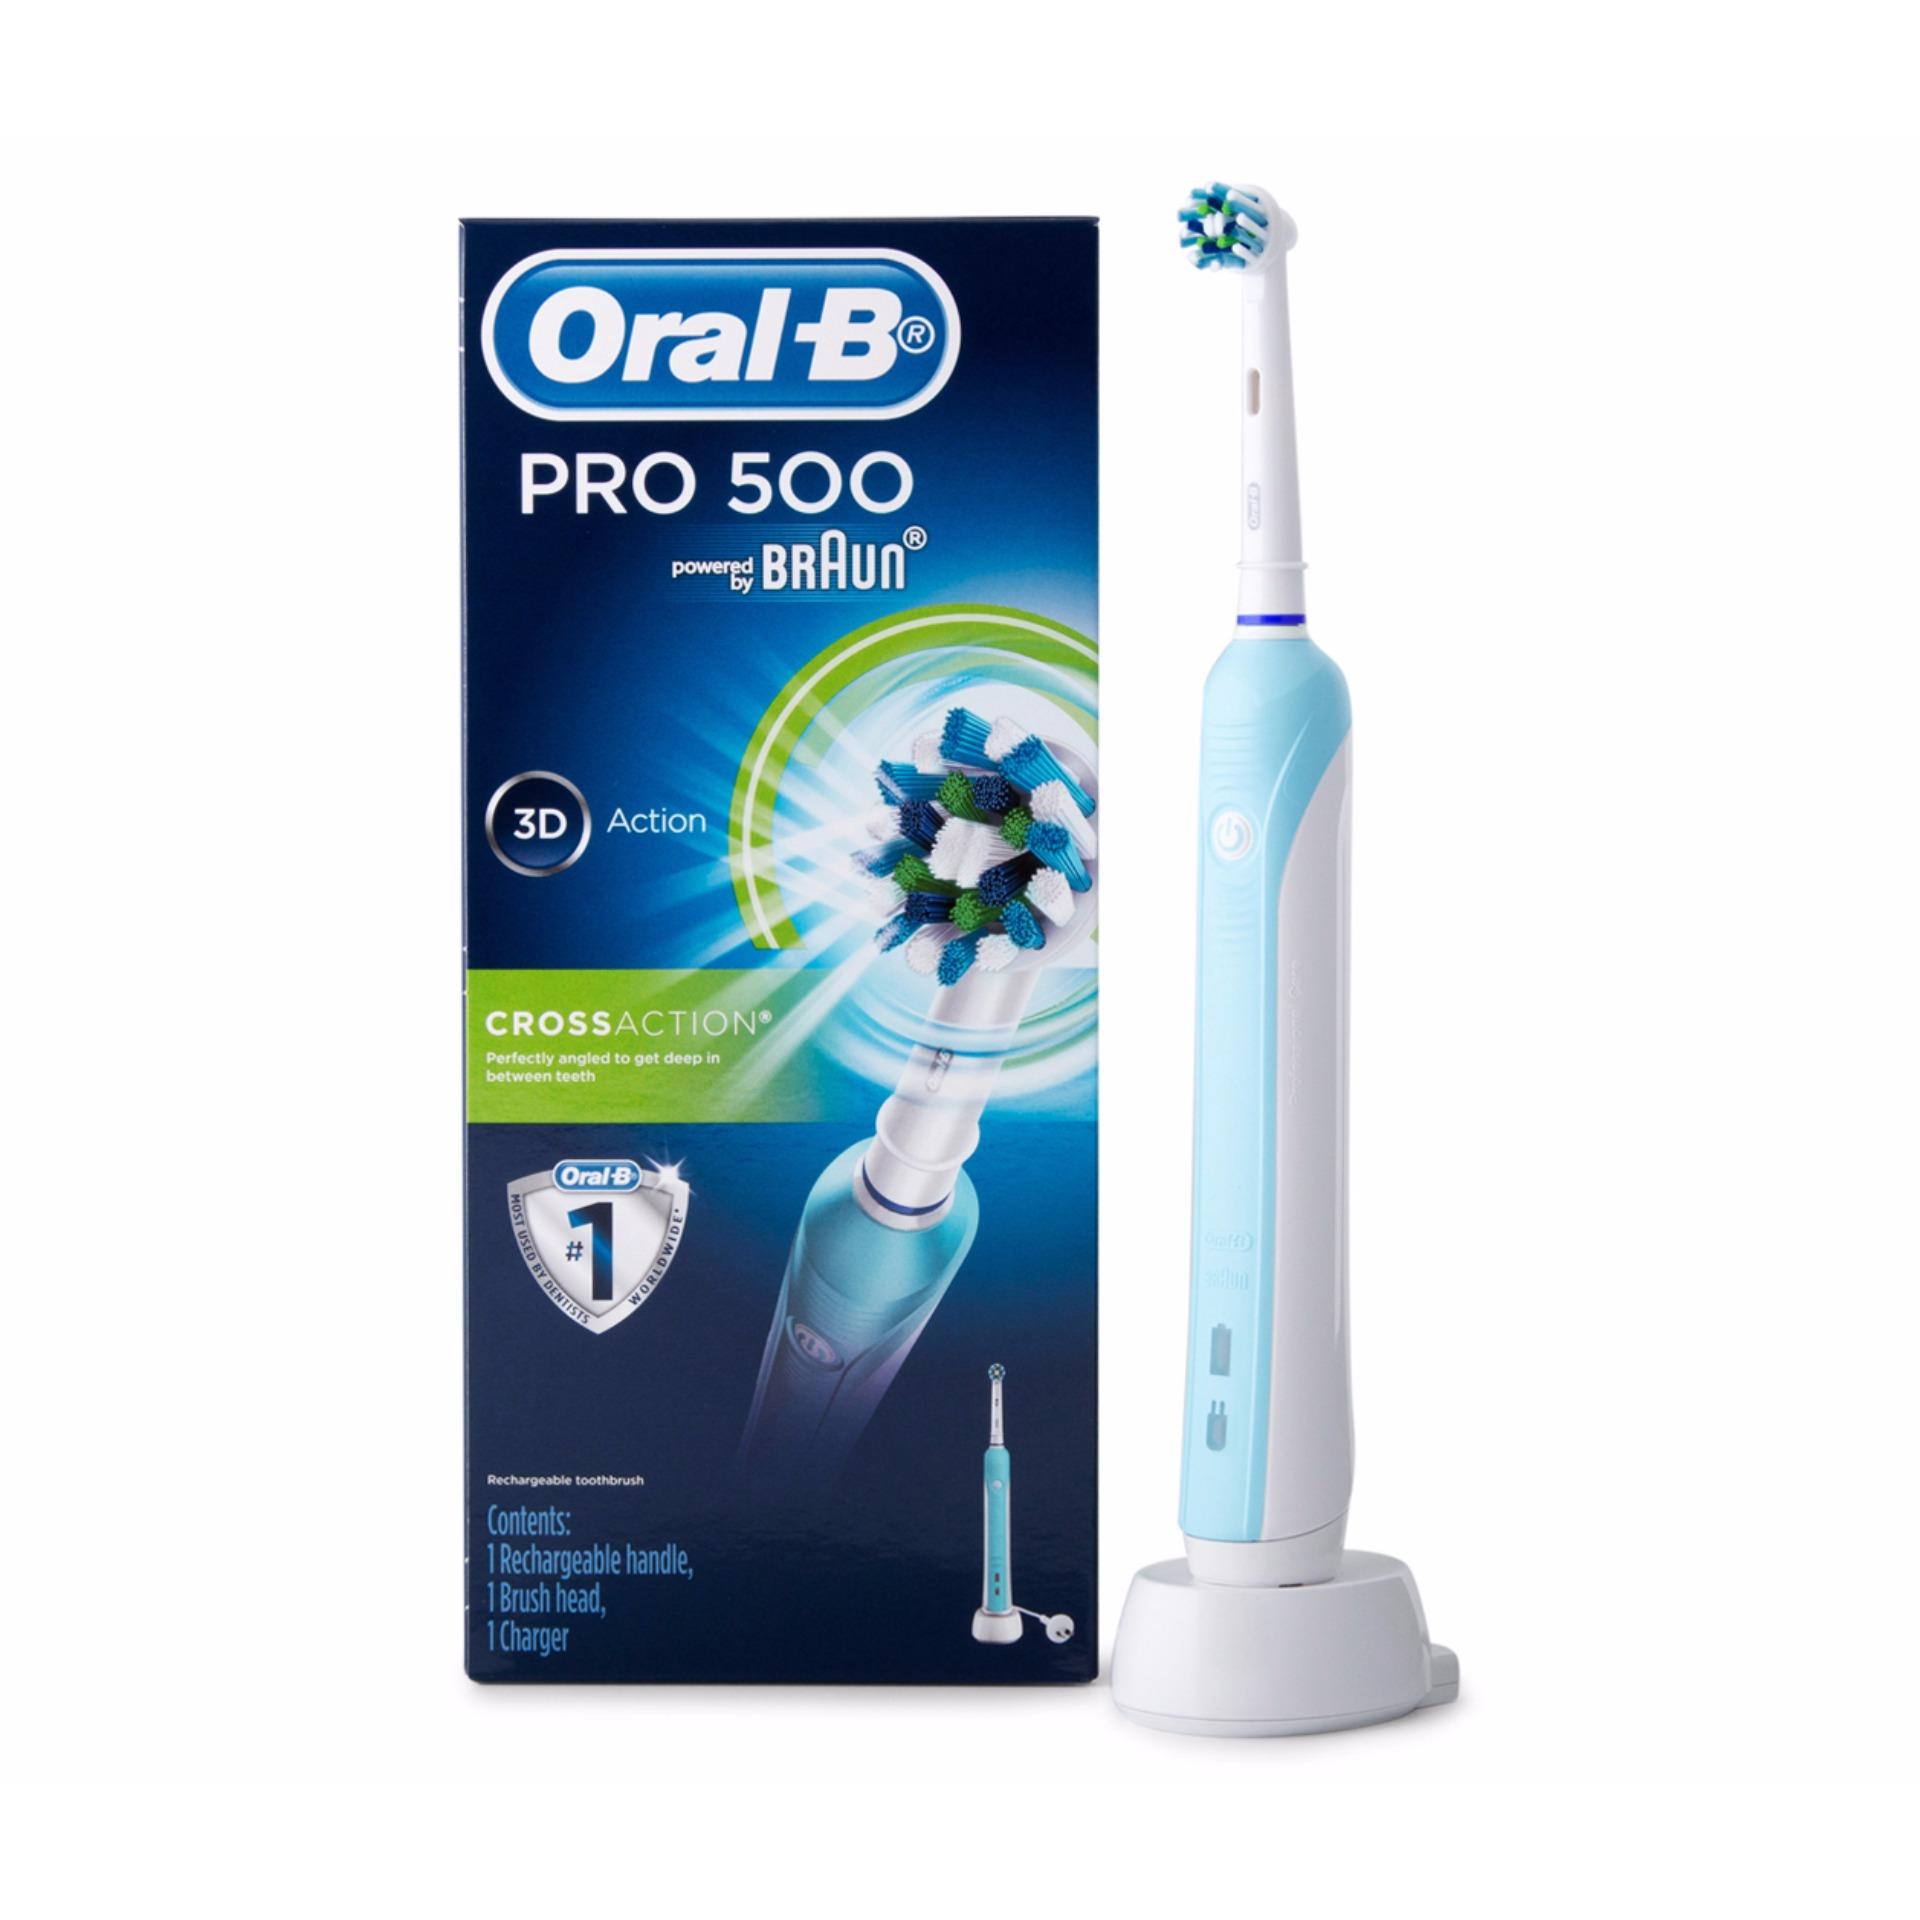 แปรงสีฟันไฟฟ้าเพื่อรอยยิ้มขาวสดใส น่าน Oral B แปรงสีฟันไฟฟ้า รุ่น Pro500